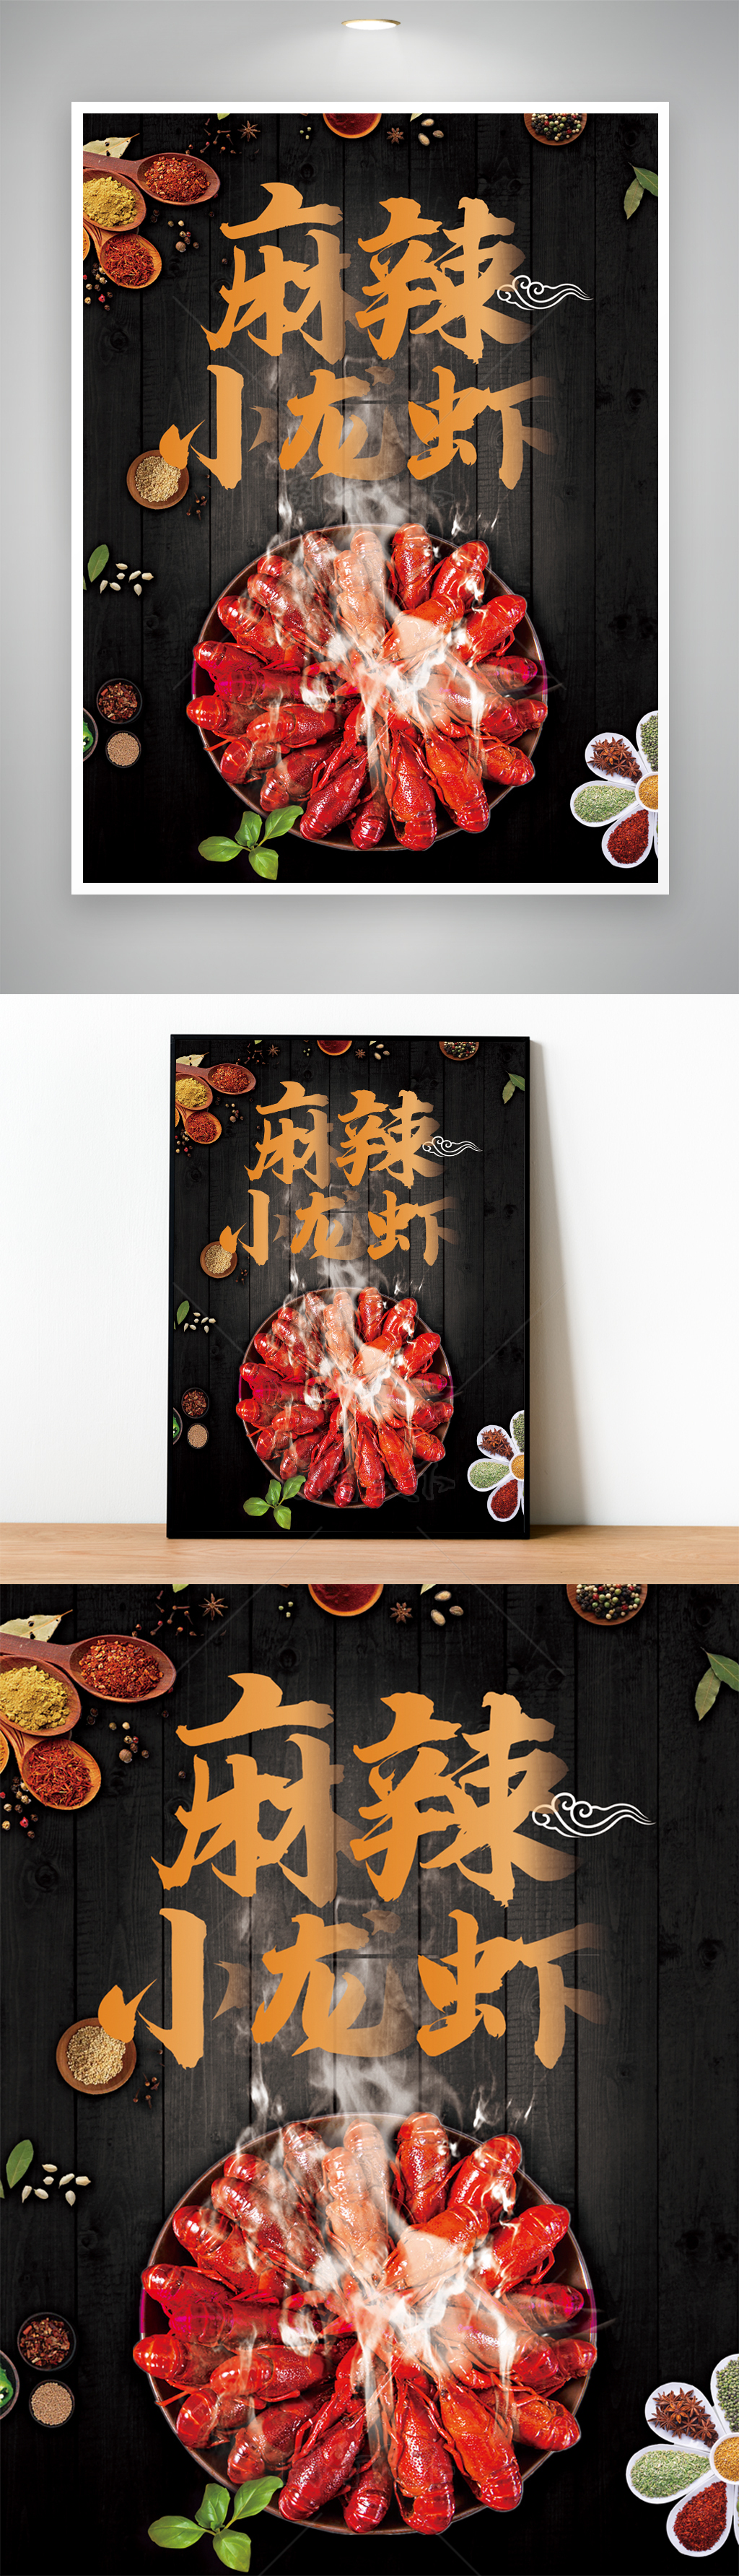 麻辣小龙虾大排档宣传海报